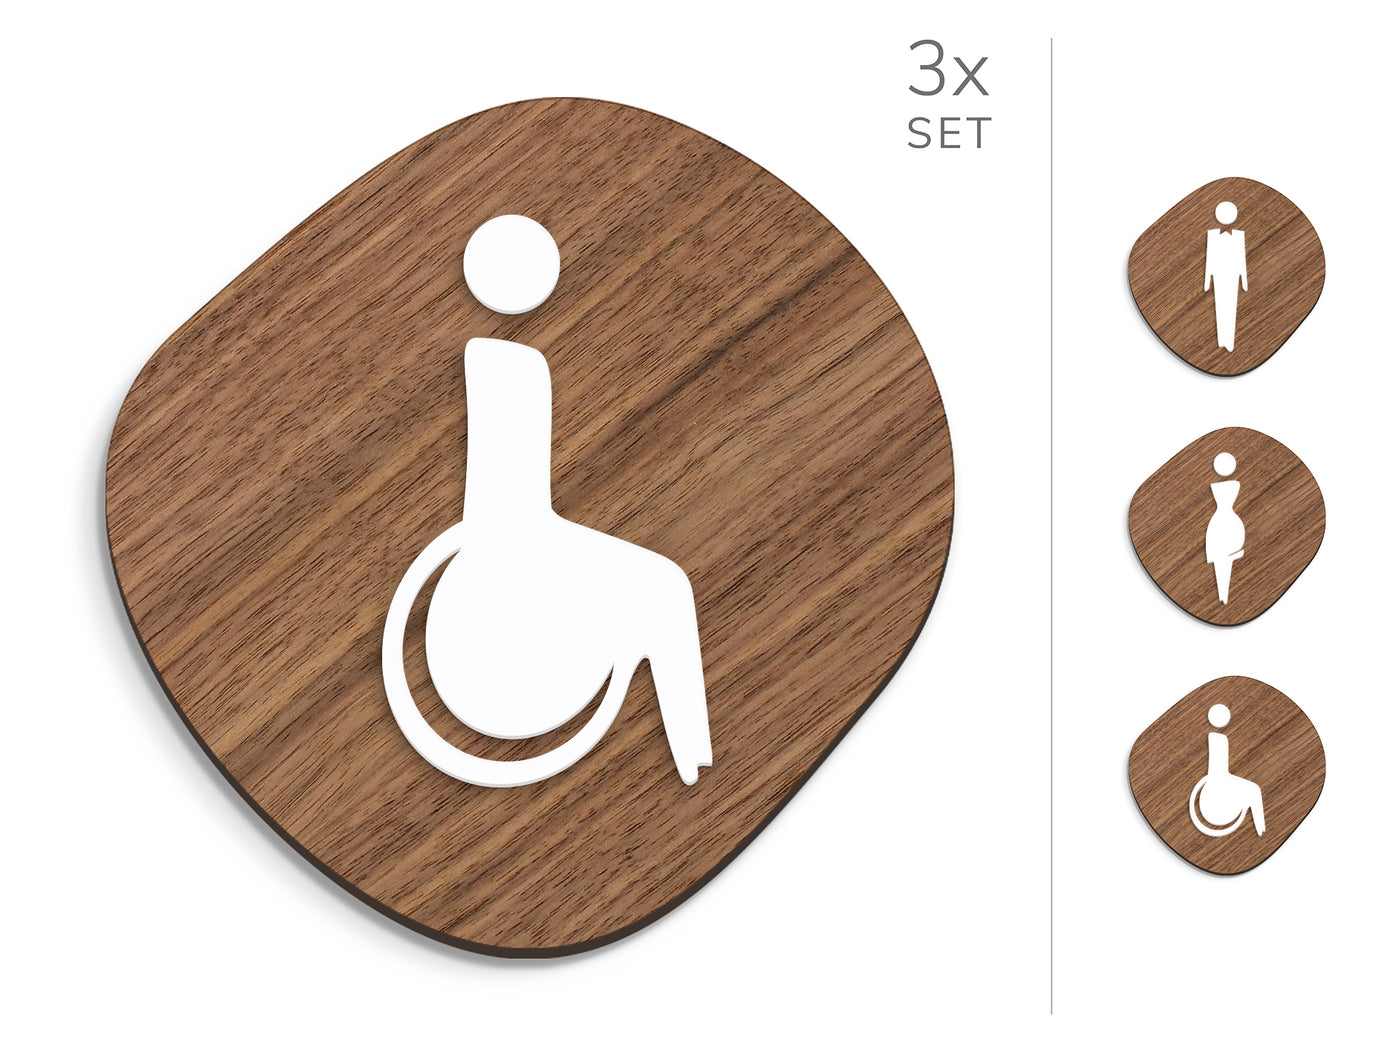 Elegant, 3x Base a forma di Pietra - Set targhe per bagno, segnaletica servizi igienici - Uomo, Donna, Disabili